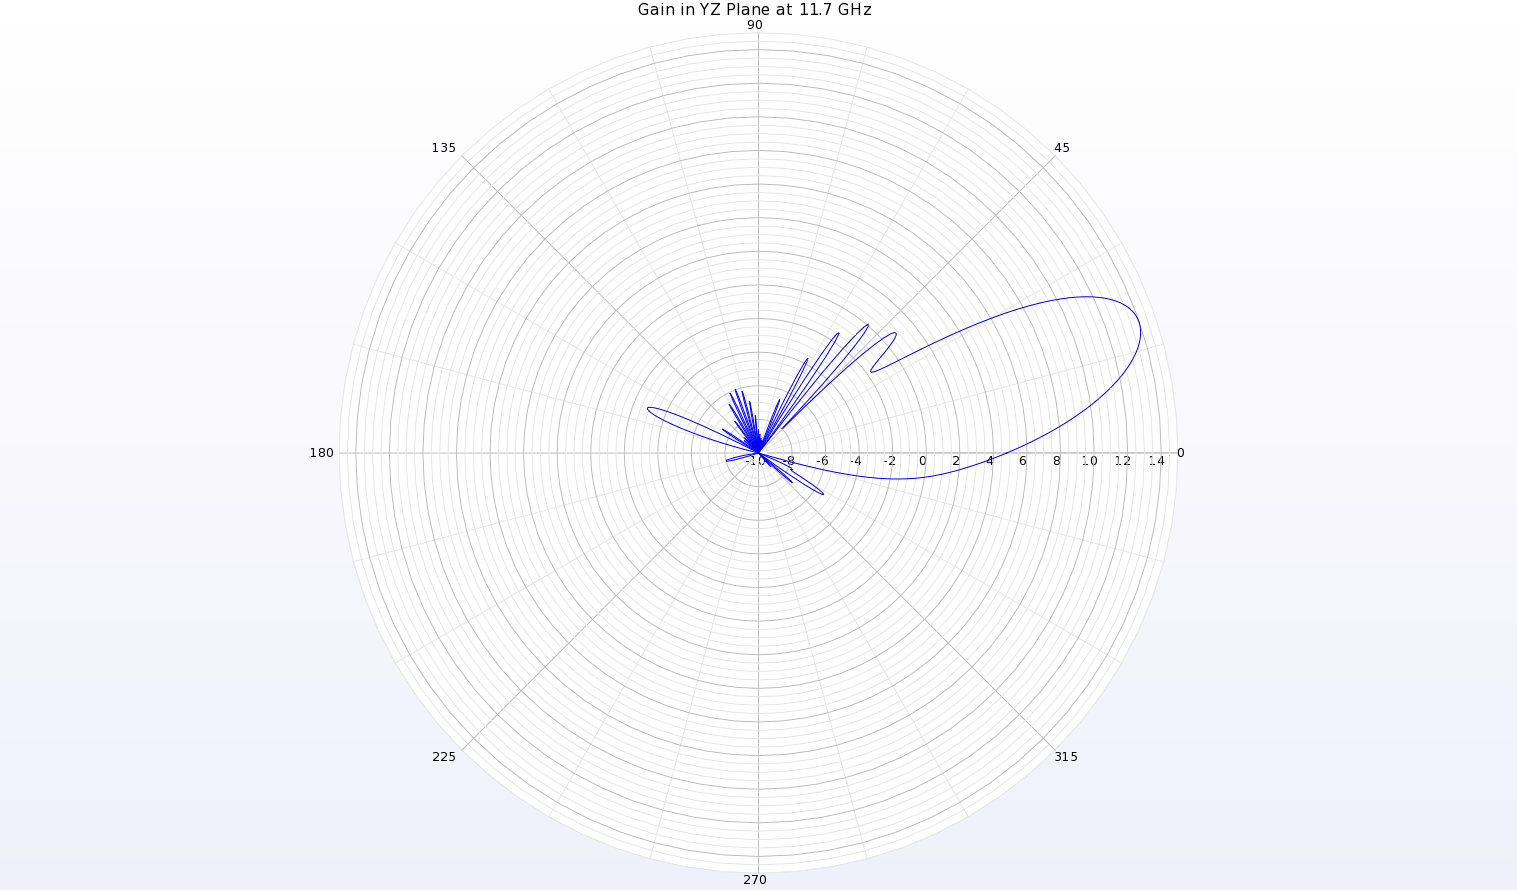 图 16：天线 YZ 平面 11.7 千兆赫处的增益模式极坐标图显示，θ=19 度处的波束峰值增益为 14 dBi。